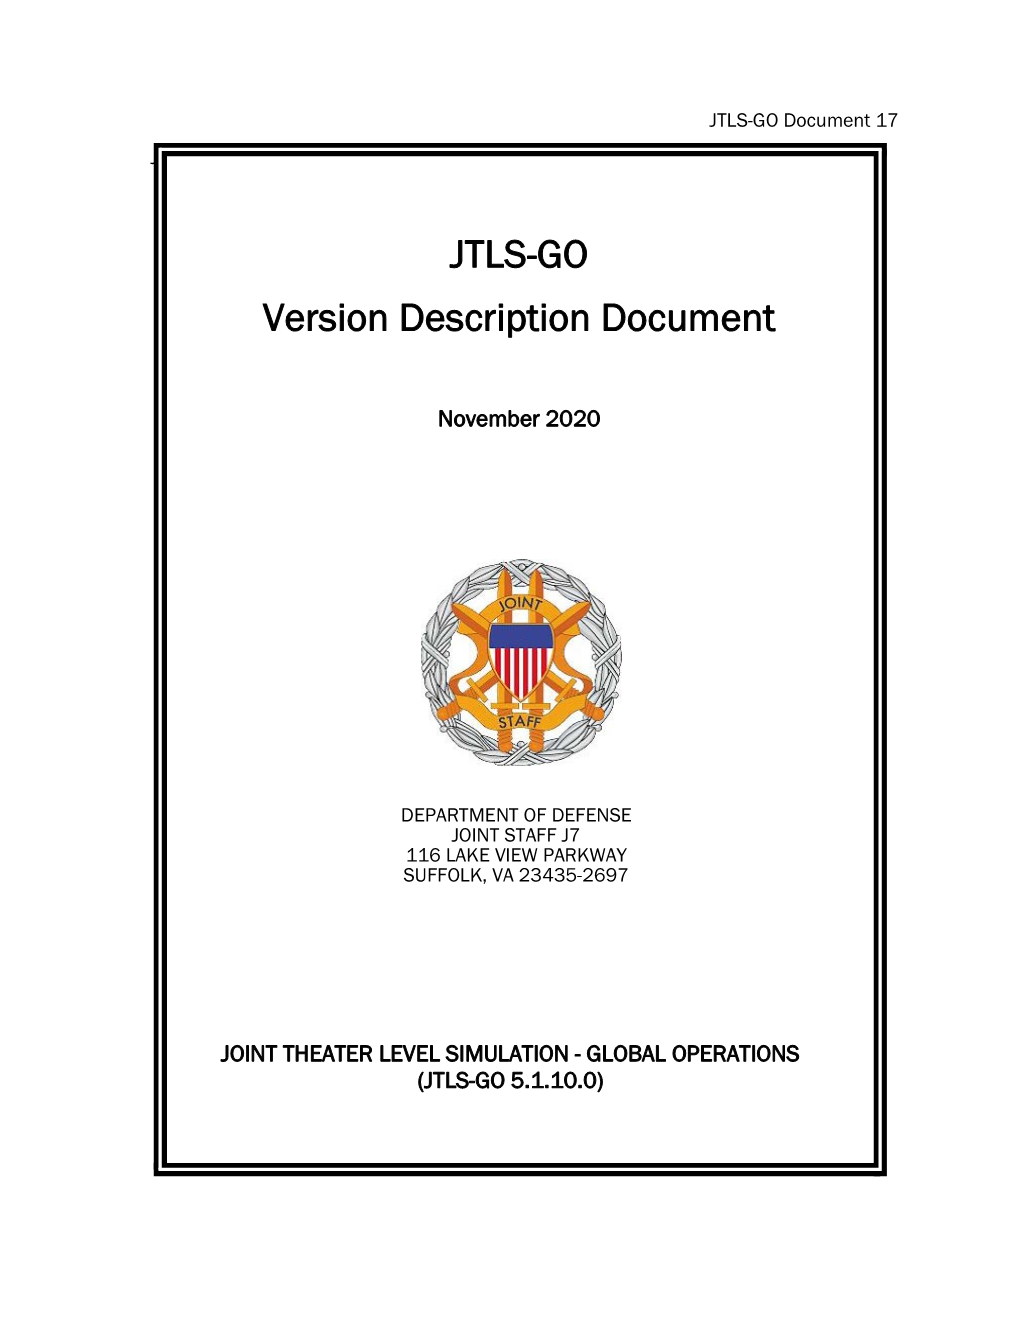 JTLS-GO Version Description Document